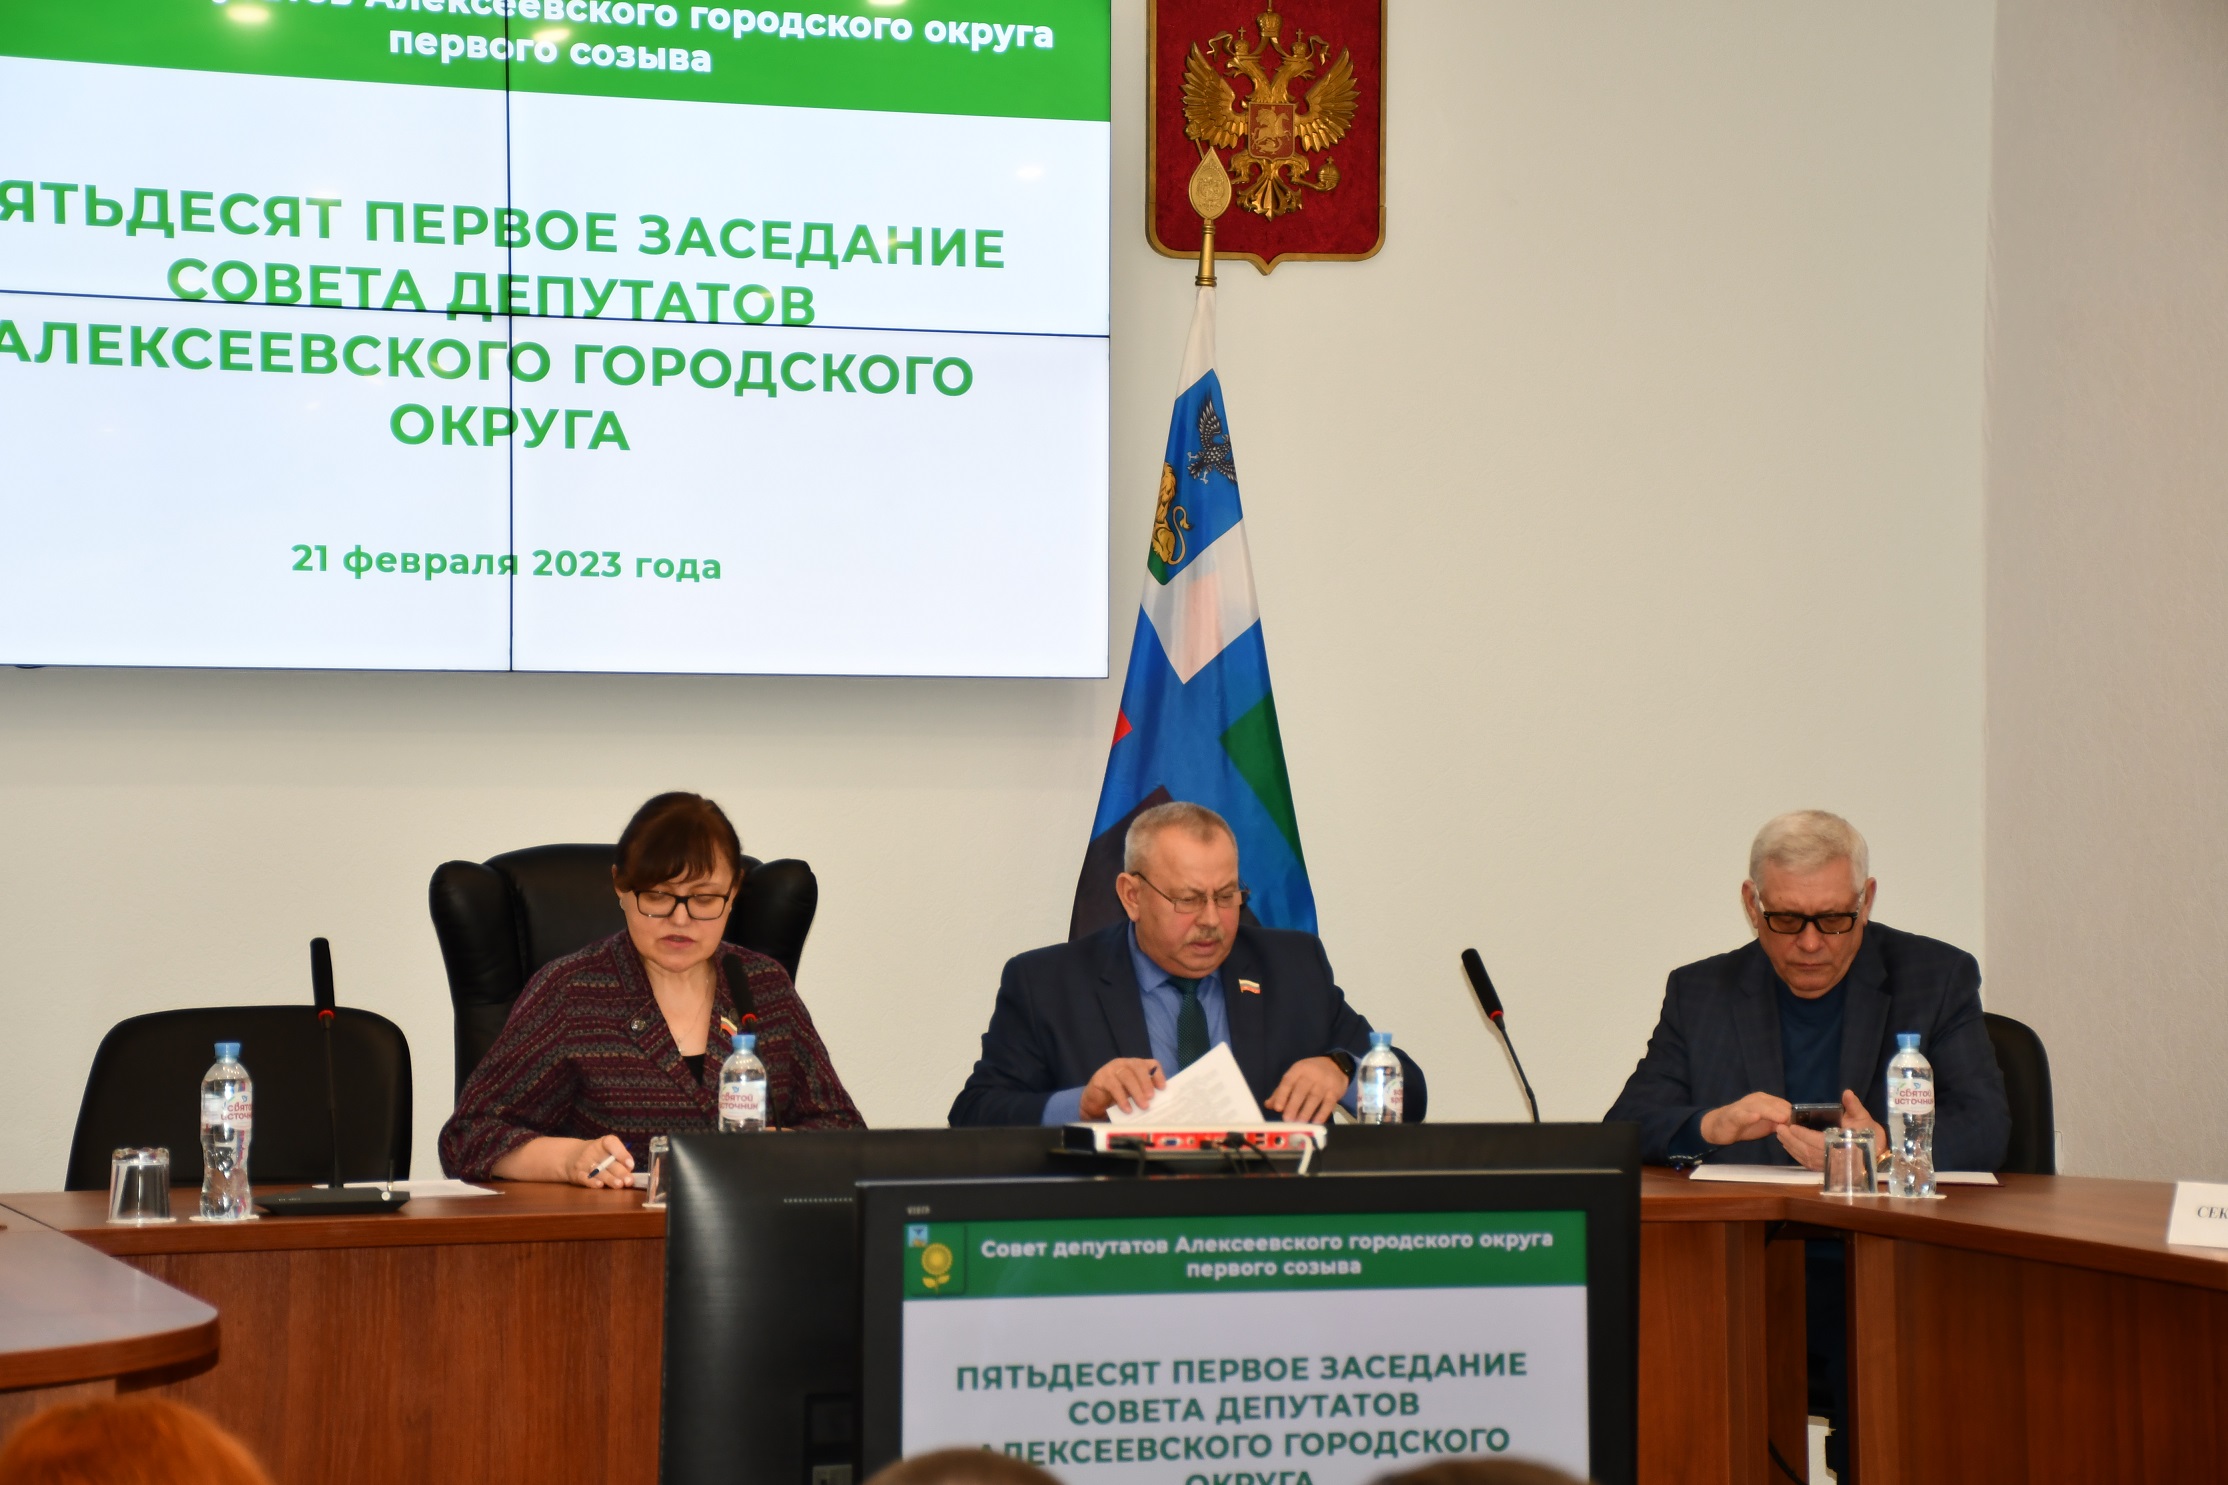 Состоялось пятьдесят первое заседание Совета депутатов Алексеевского городского округа